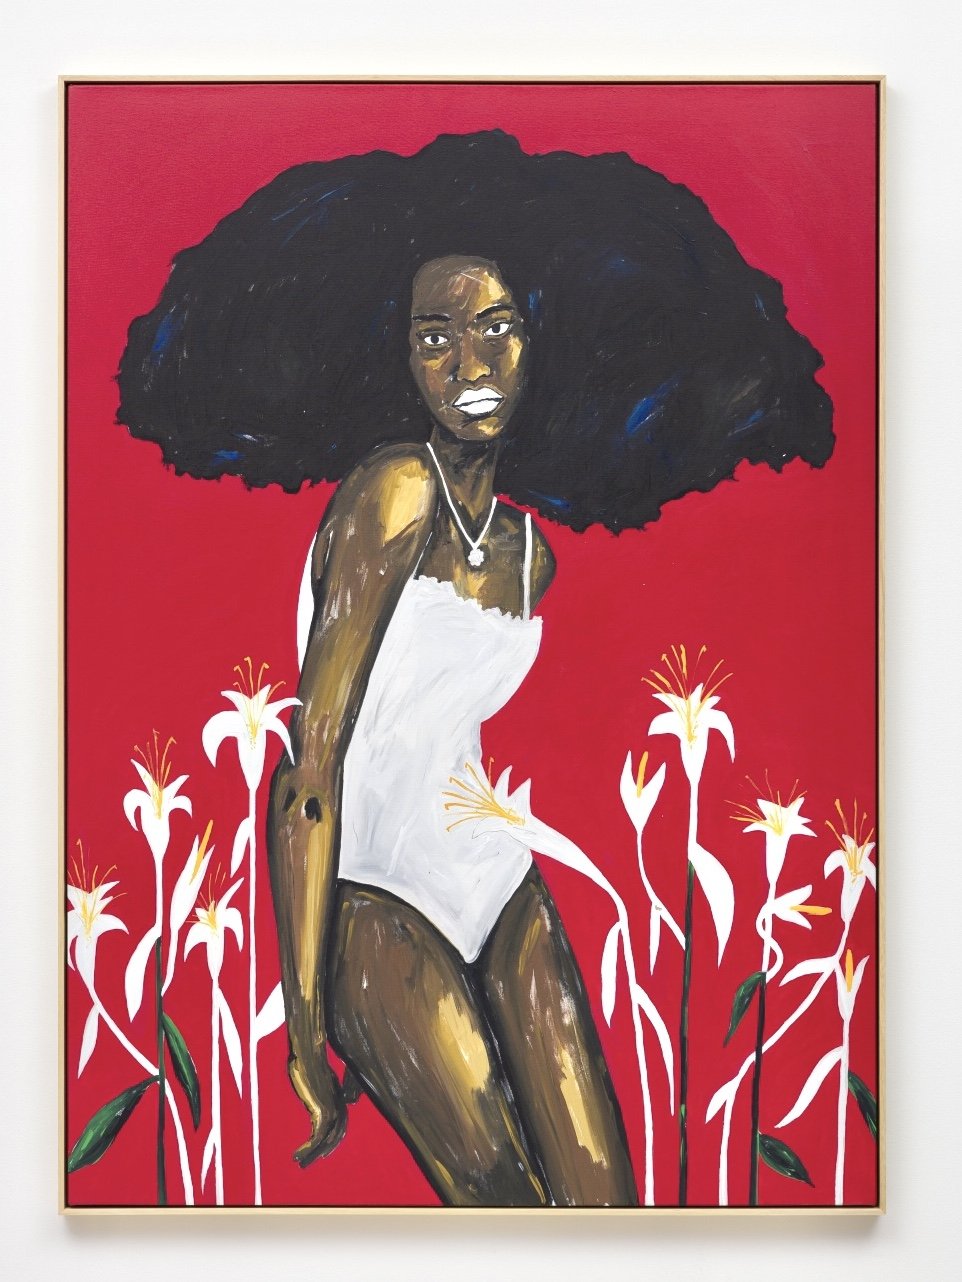  "Tacoã Silva", 160 x 120 cm, Acrylic on Canvas, 2022 